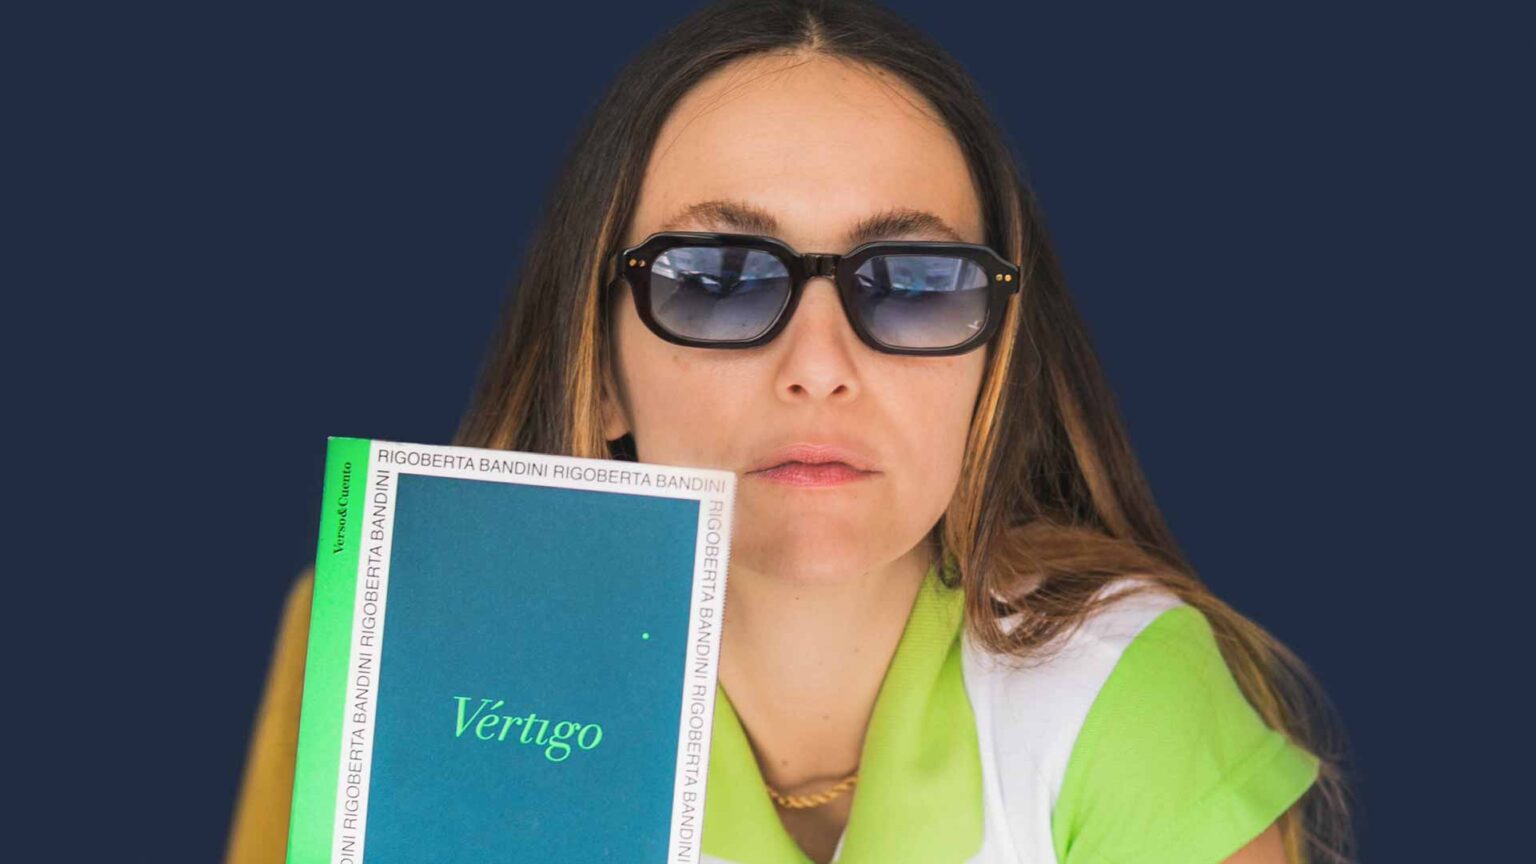 ‘Vértigo’, la crisis vital de la que nació Rigoberta Bandini